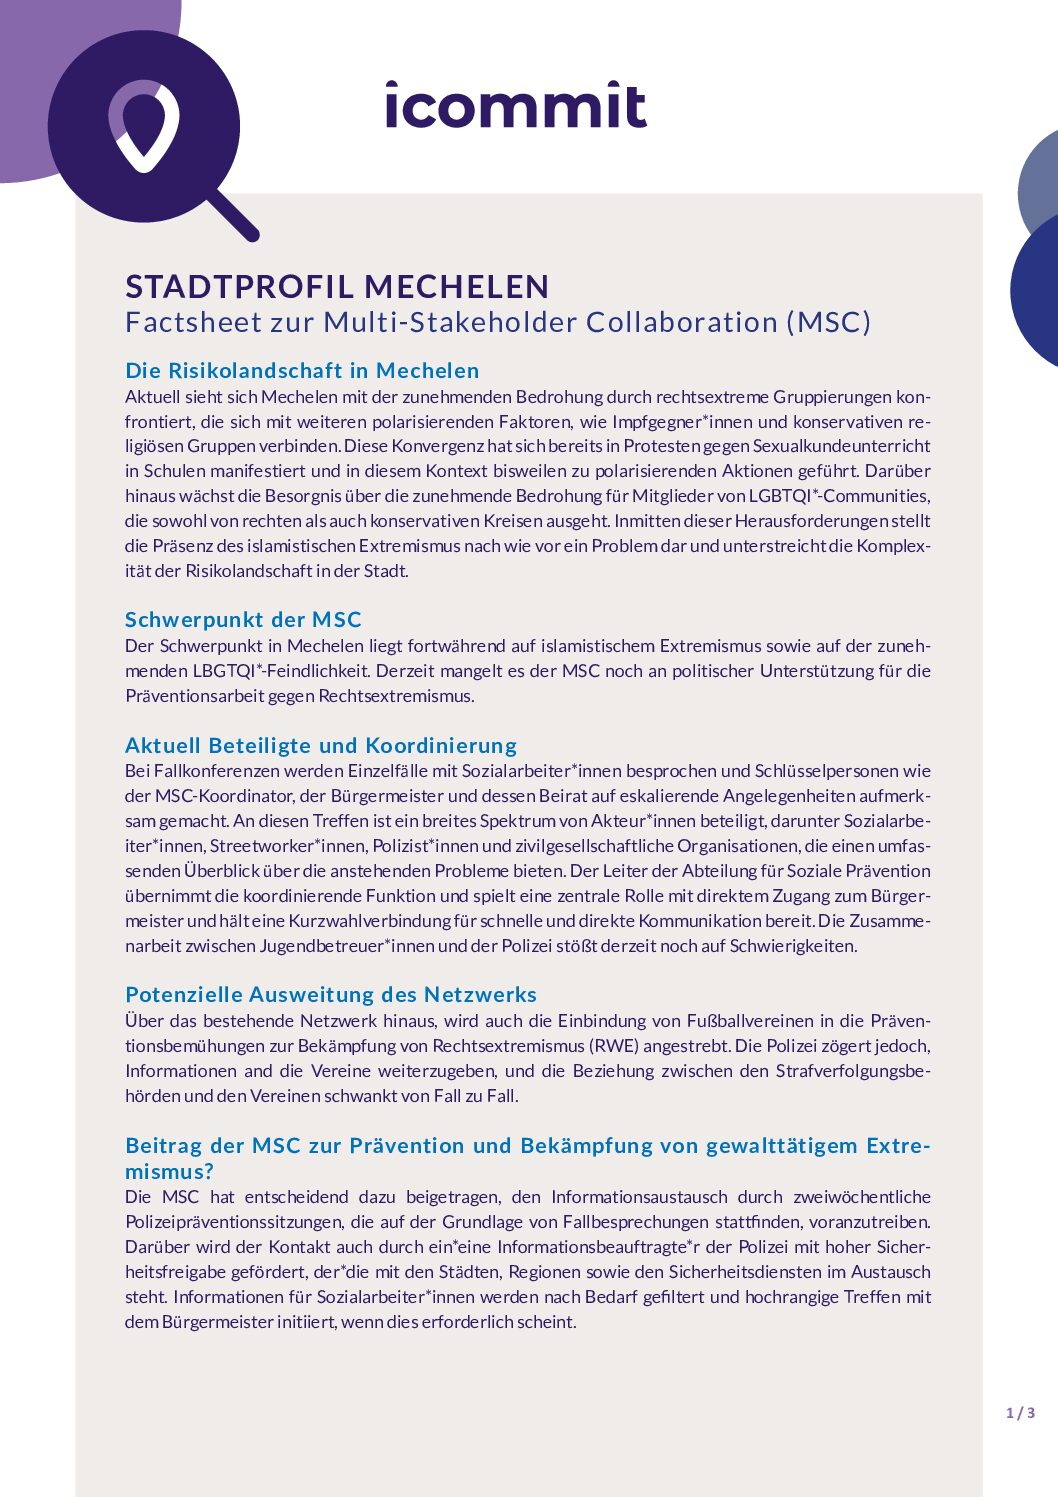 Mechelen Factsheet German